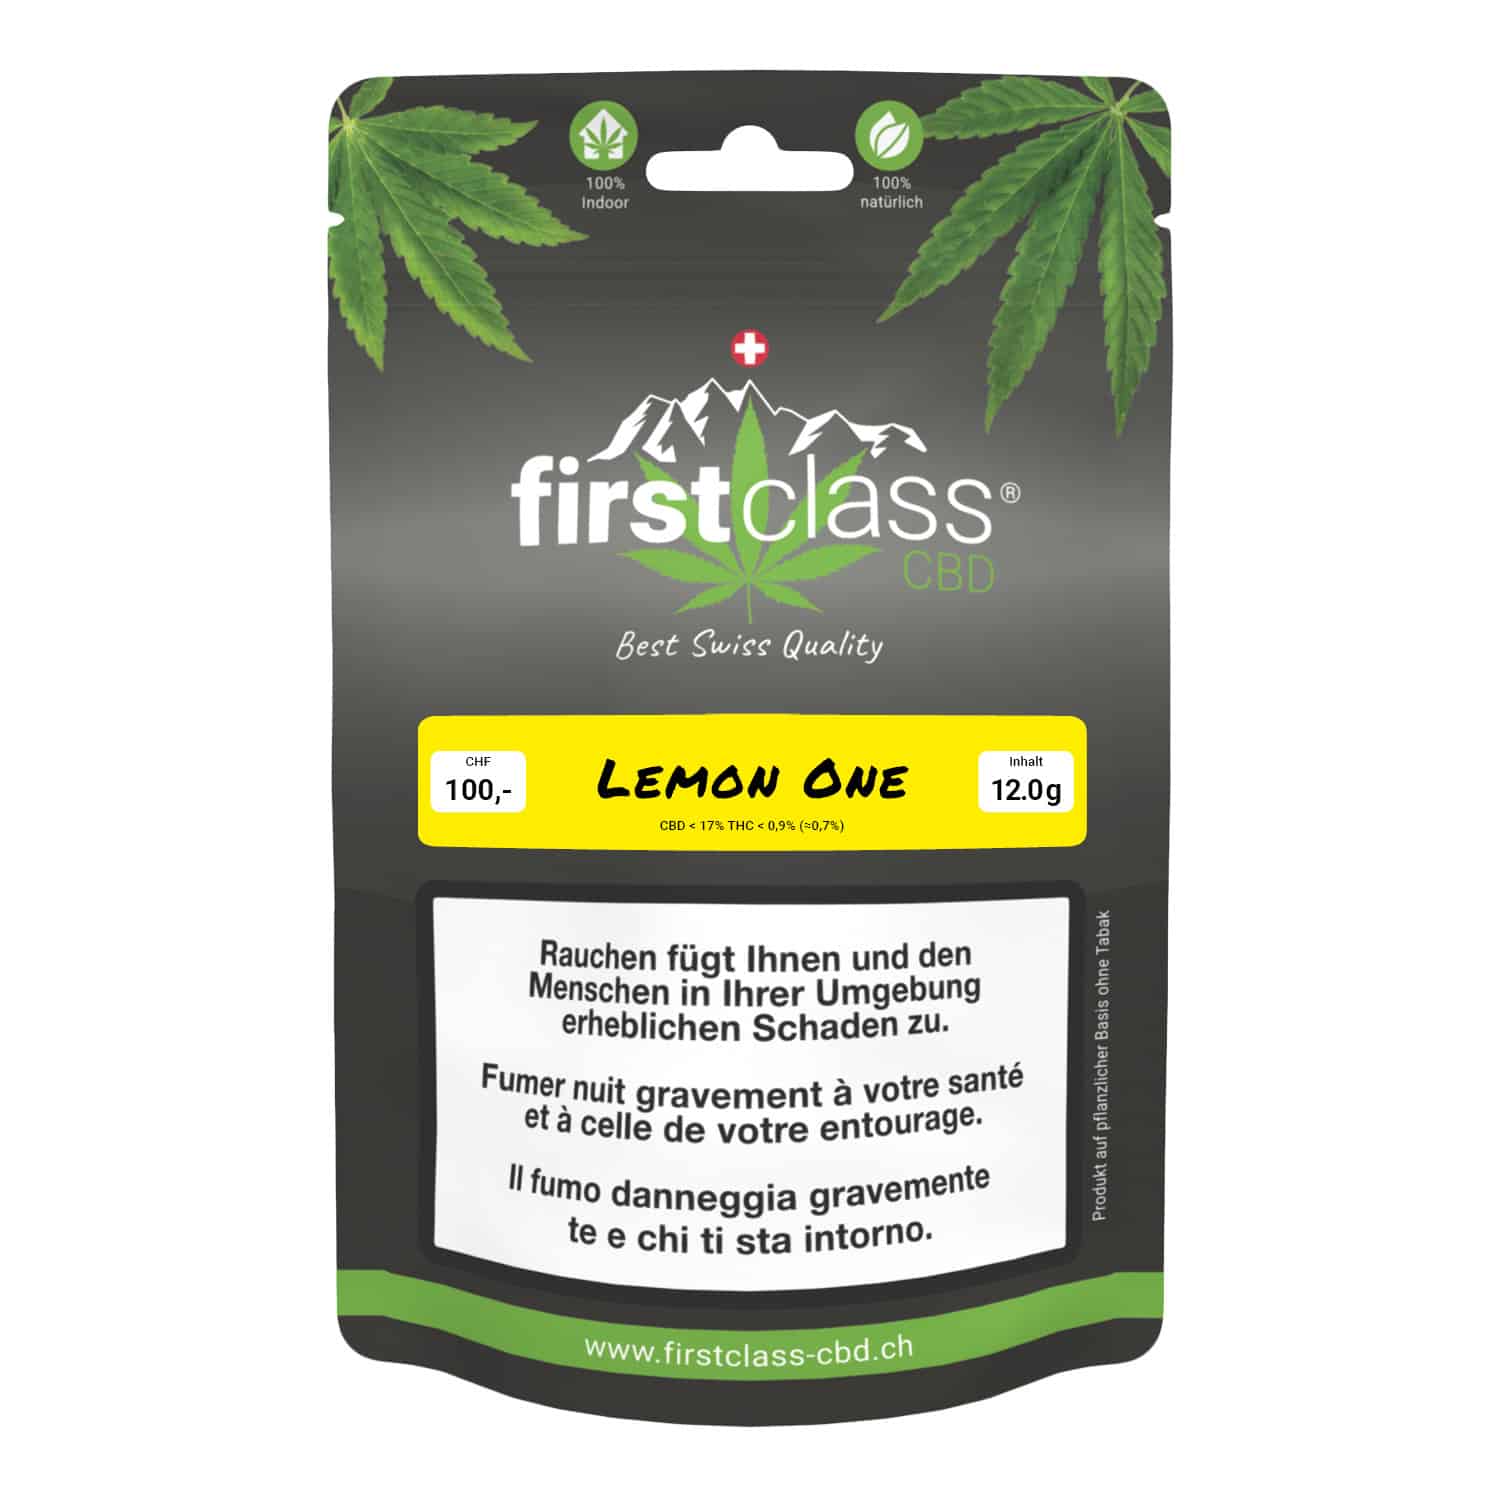 First Class CBD Lemon One, Cannabis